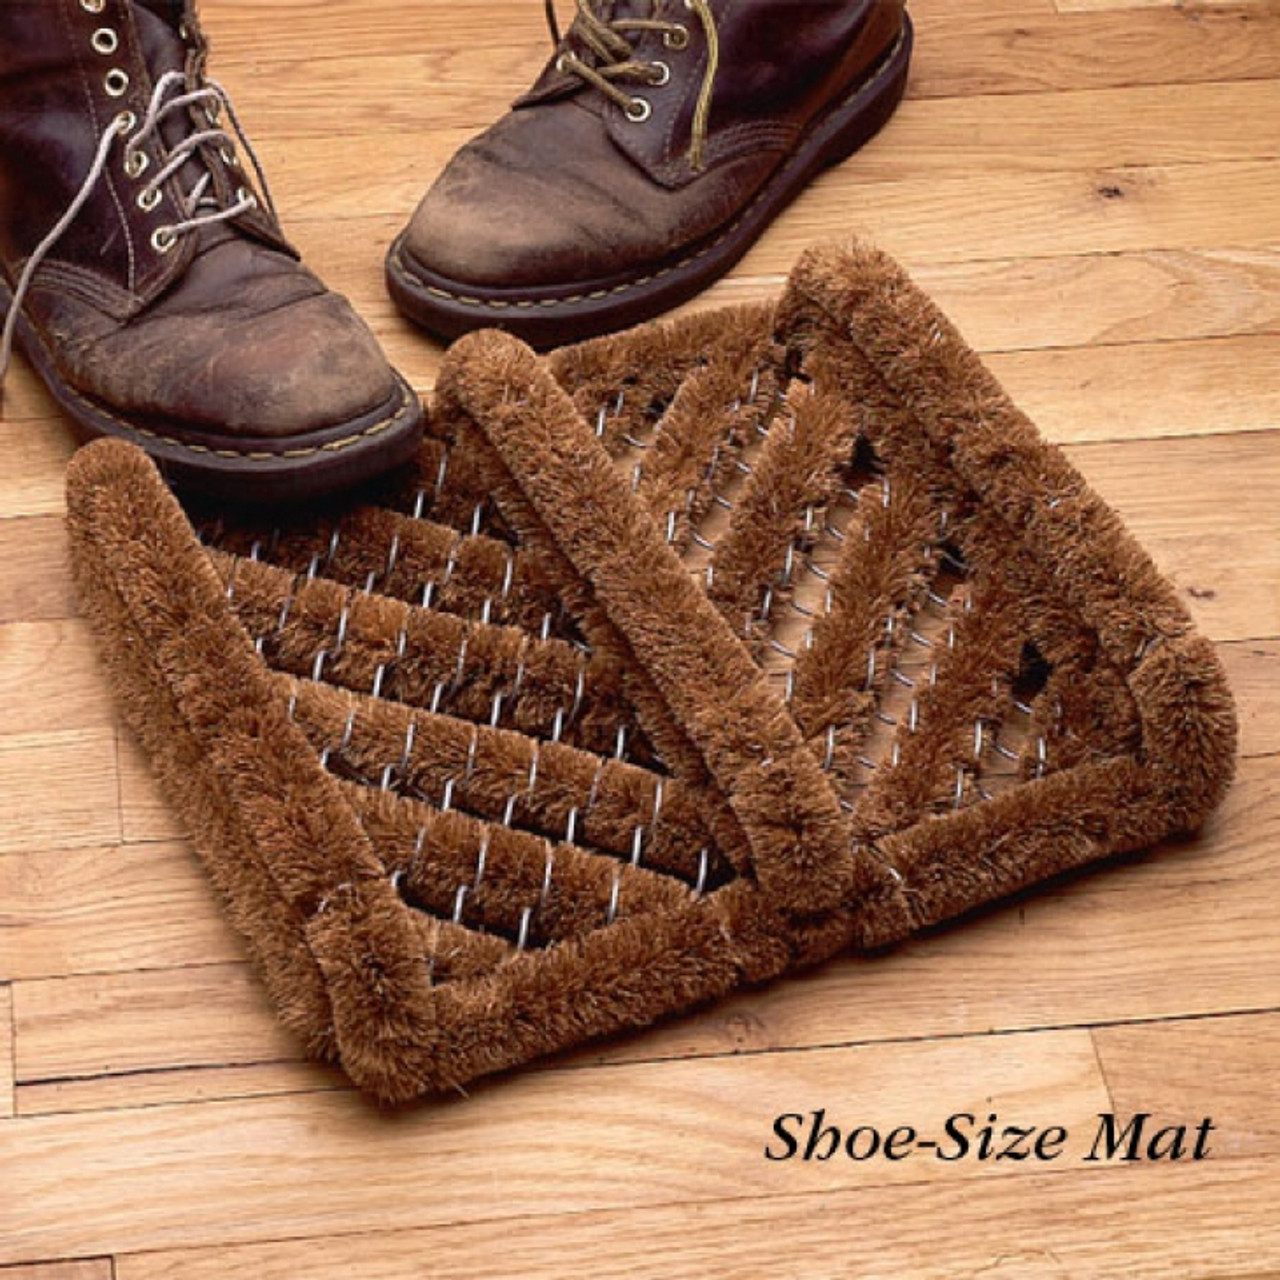 Shoe-Size Coir Mat